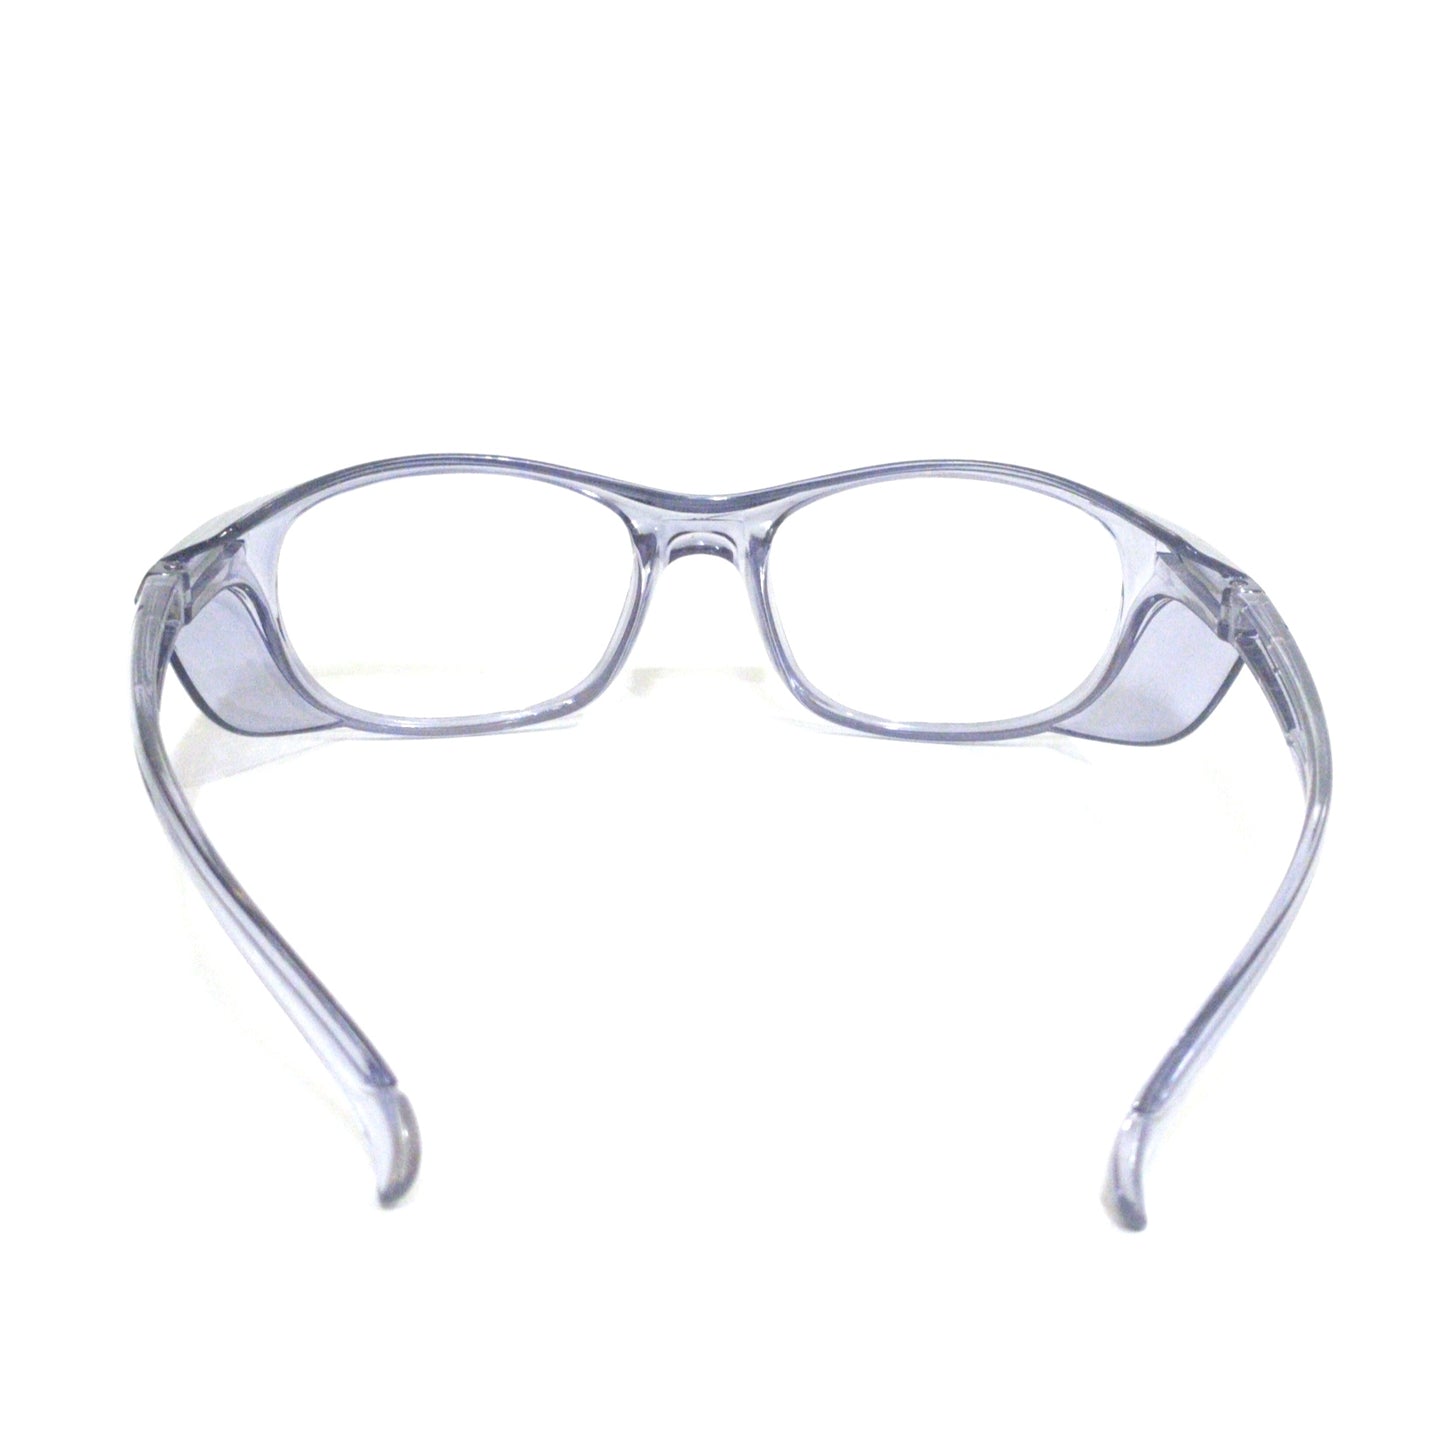 EYESafety Transparent Grey Frame Prescription Safety Glasses